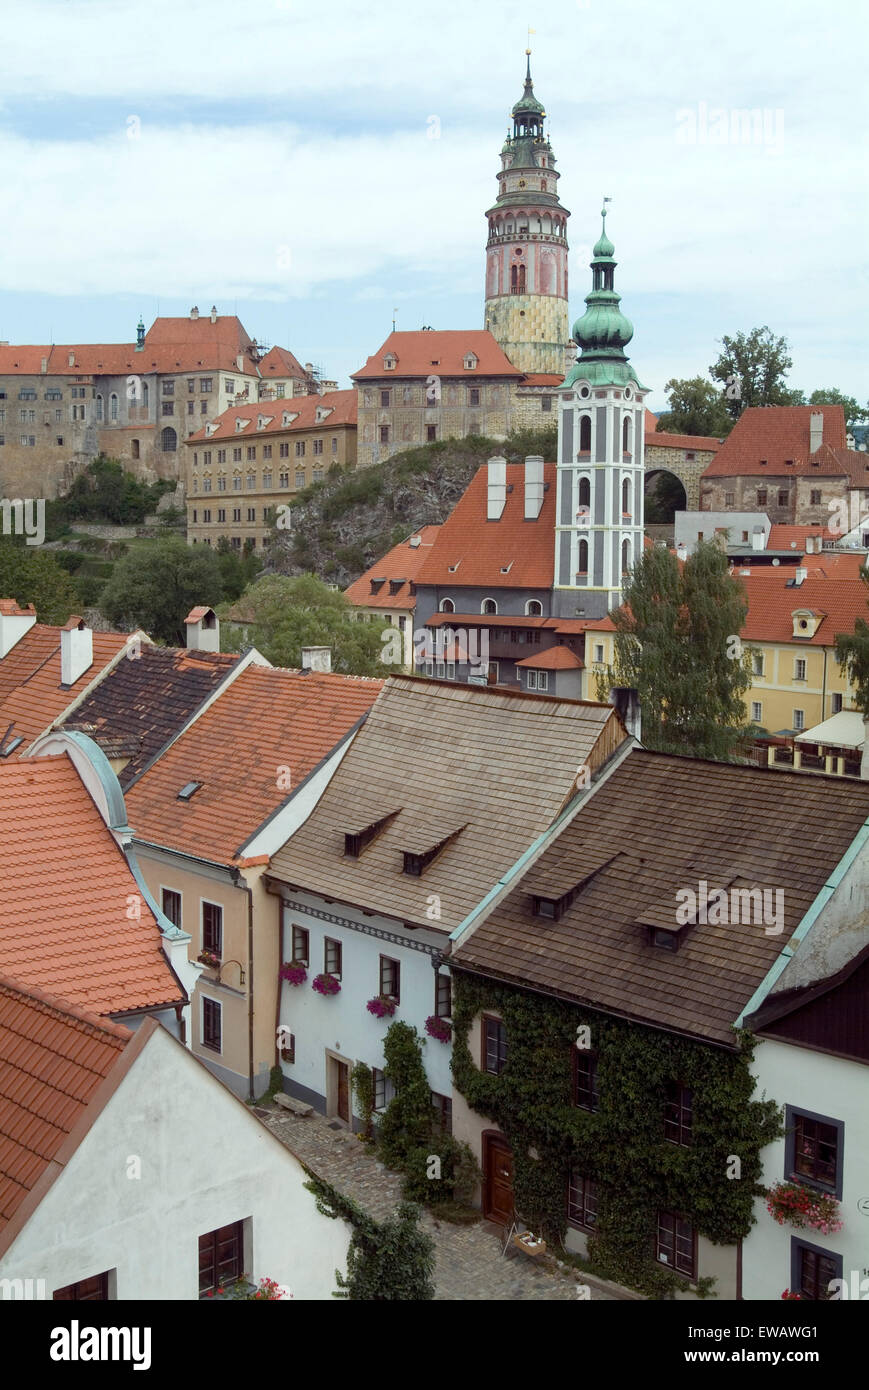 Cité médiévale au patrimoine mondial de l'UNESCO Cesky Krumlov, République tchèque, la Bohême du Sud, de l'Europe Banque D'Images